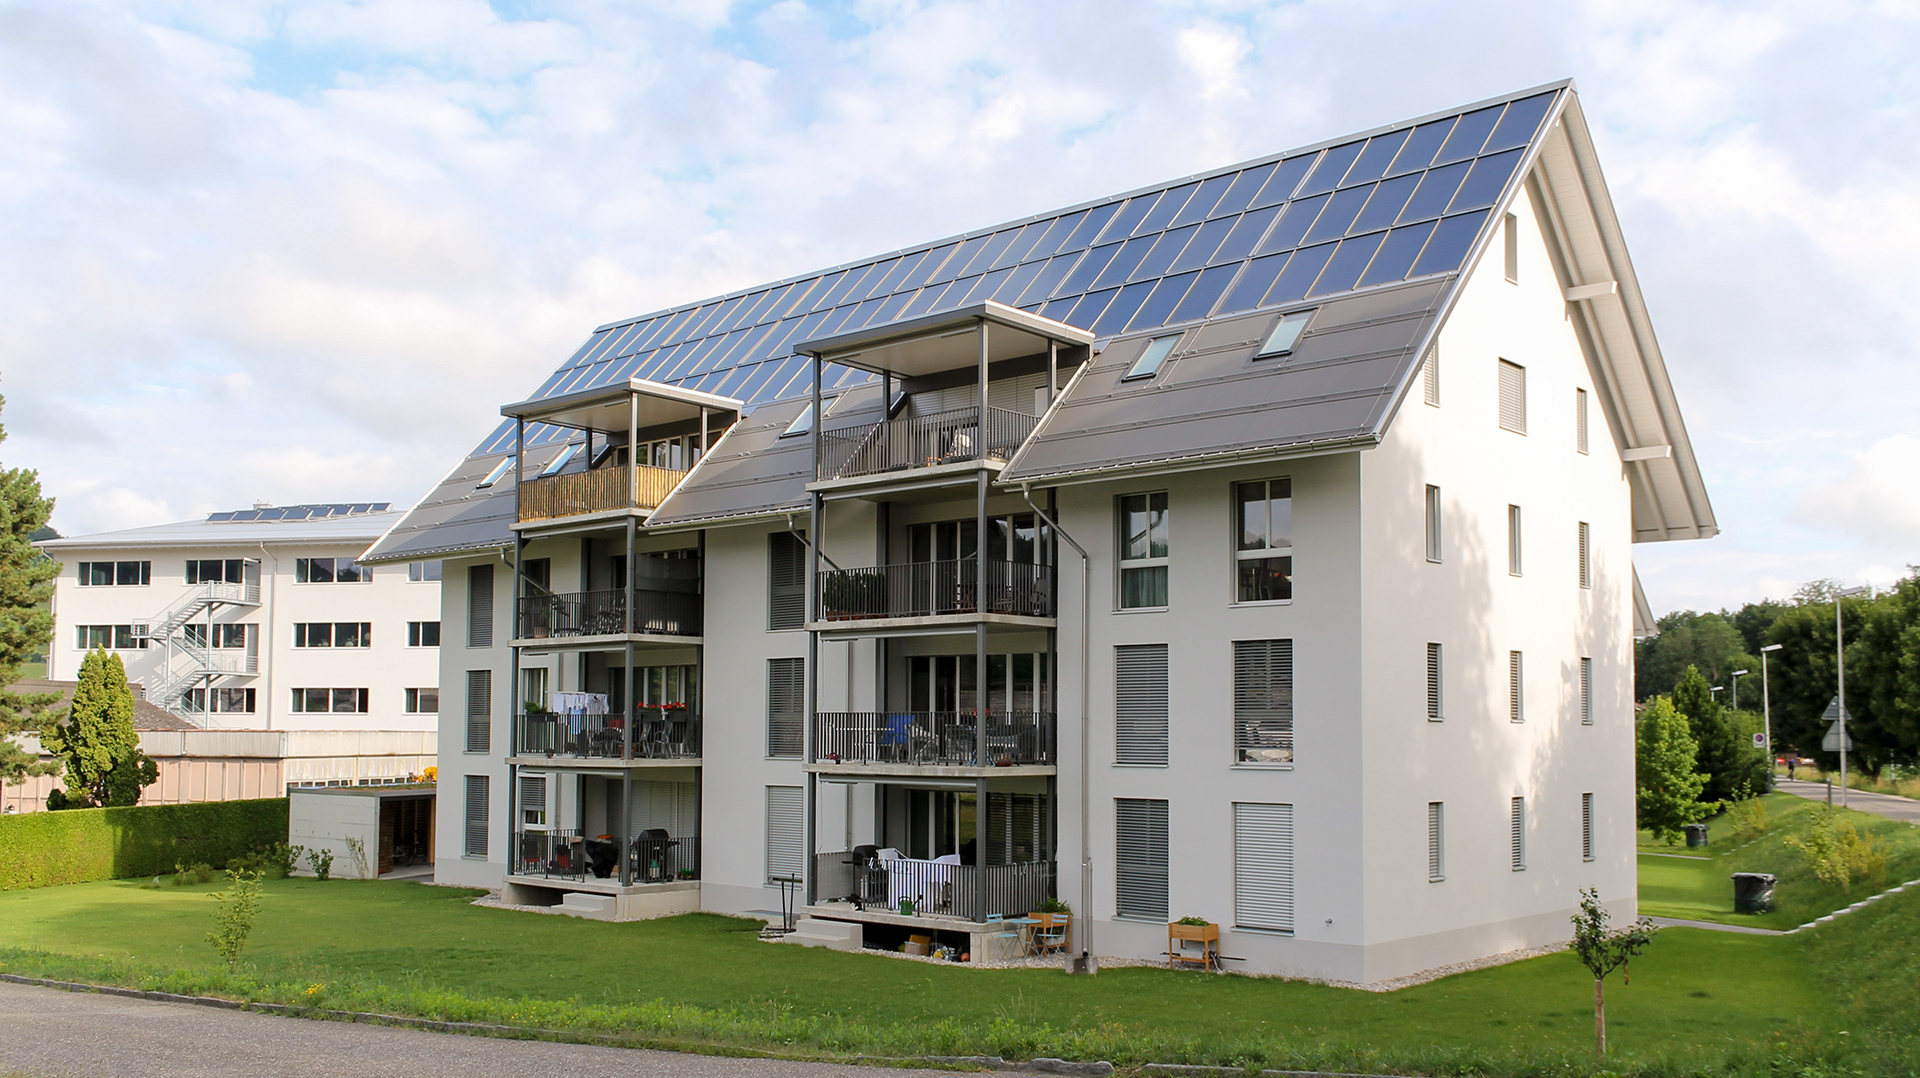 Mehrfamilienhaus mit Solaranlage am Dach